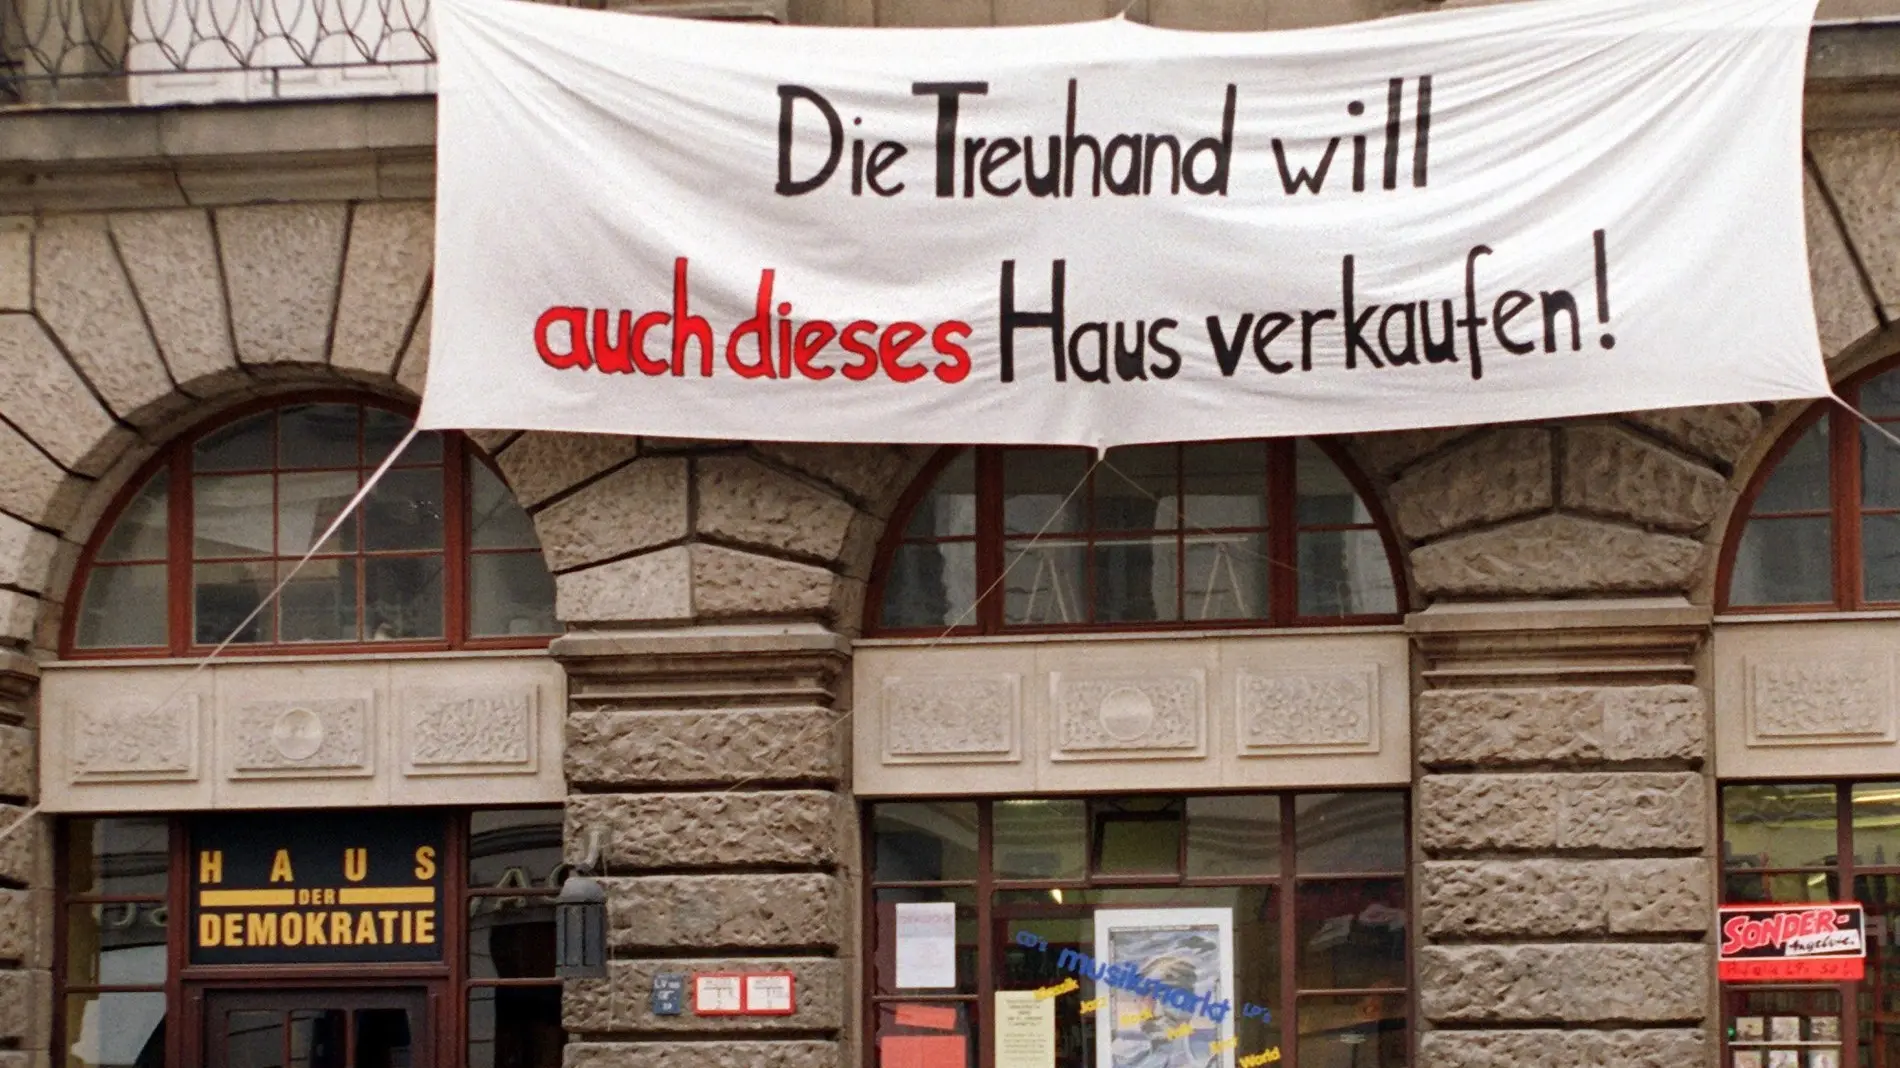 Transparent mit der Aufschrift "Die Treuhand will auch dieses Haus verkaufen!"